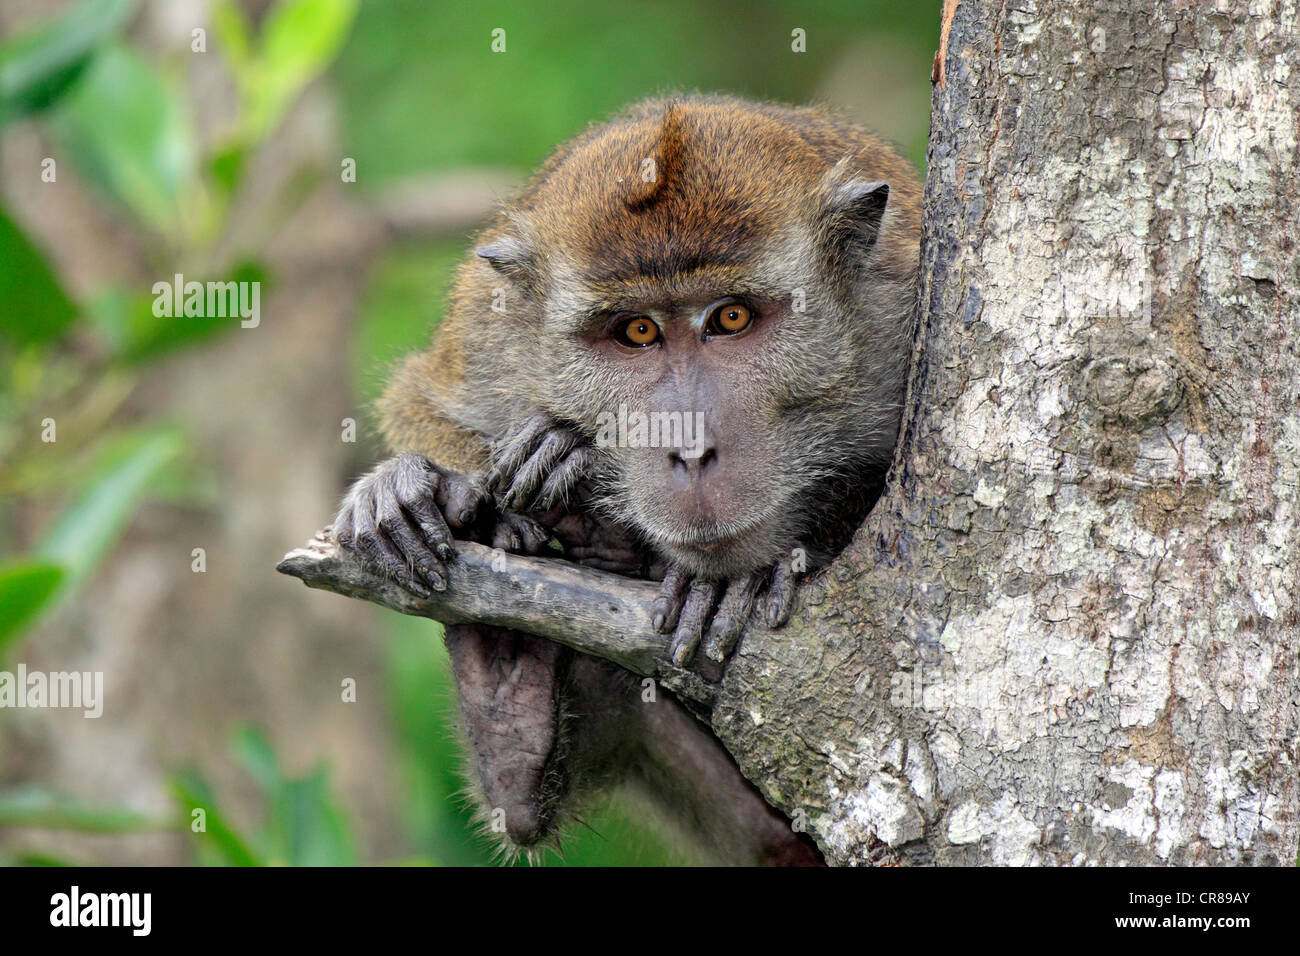 Crab-eating macaque (Macaca fascicularis), on tree, Labuk Bay, Sabah, Borneo, Malaysia, Asia Stock Photo